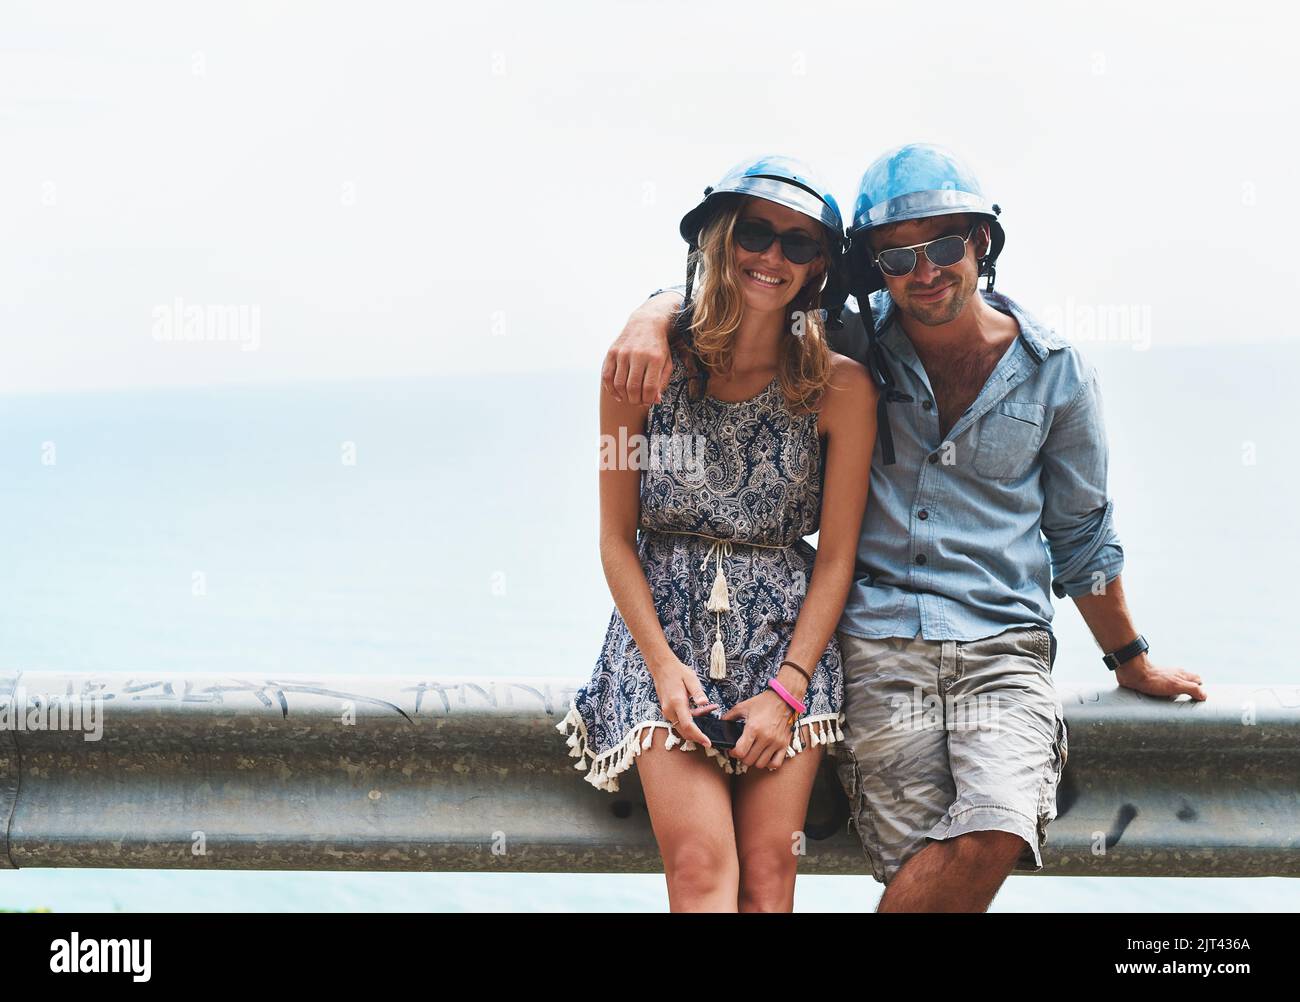 Insieme vedremo il mondo: Una giovane coppia felice che trascorre il tempo insieme all'aperto. Foto Stock